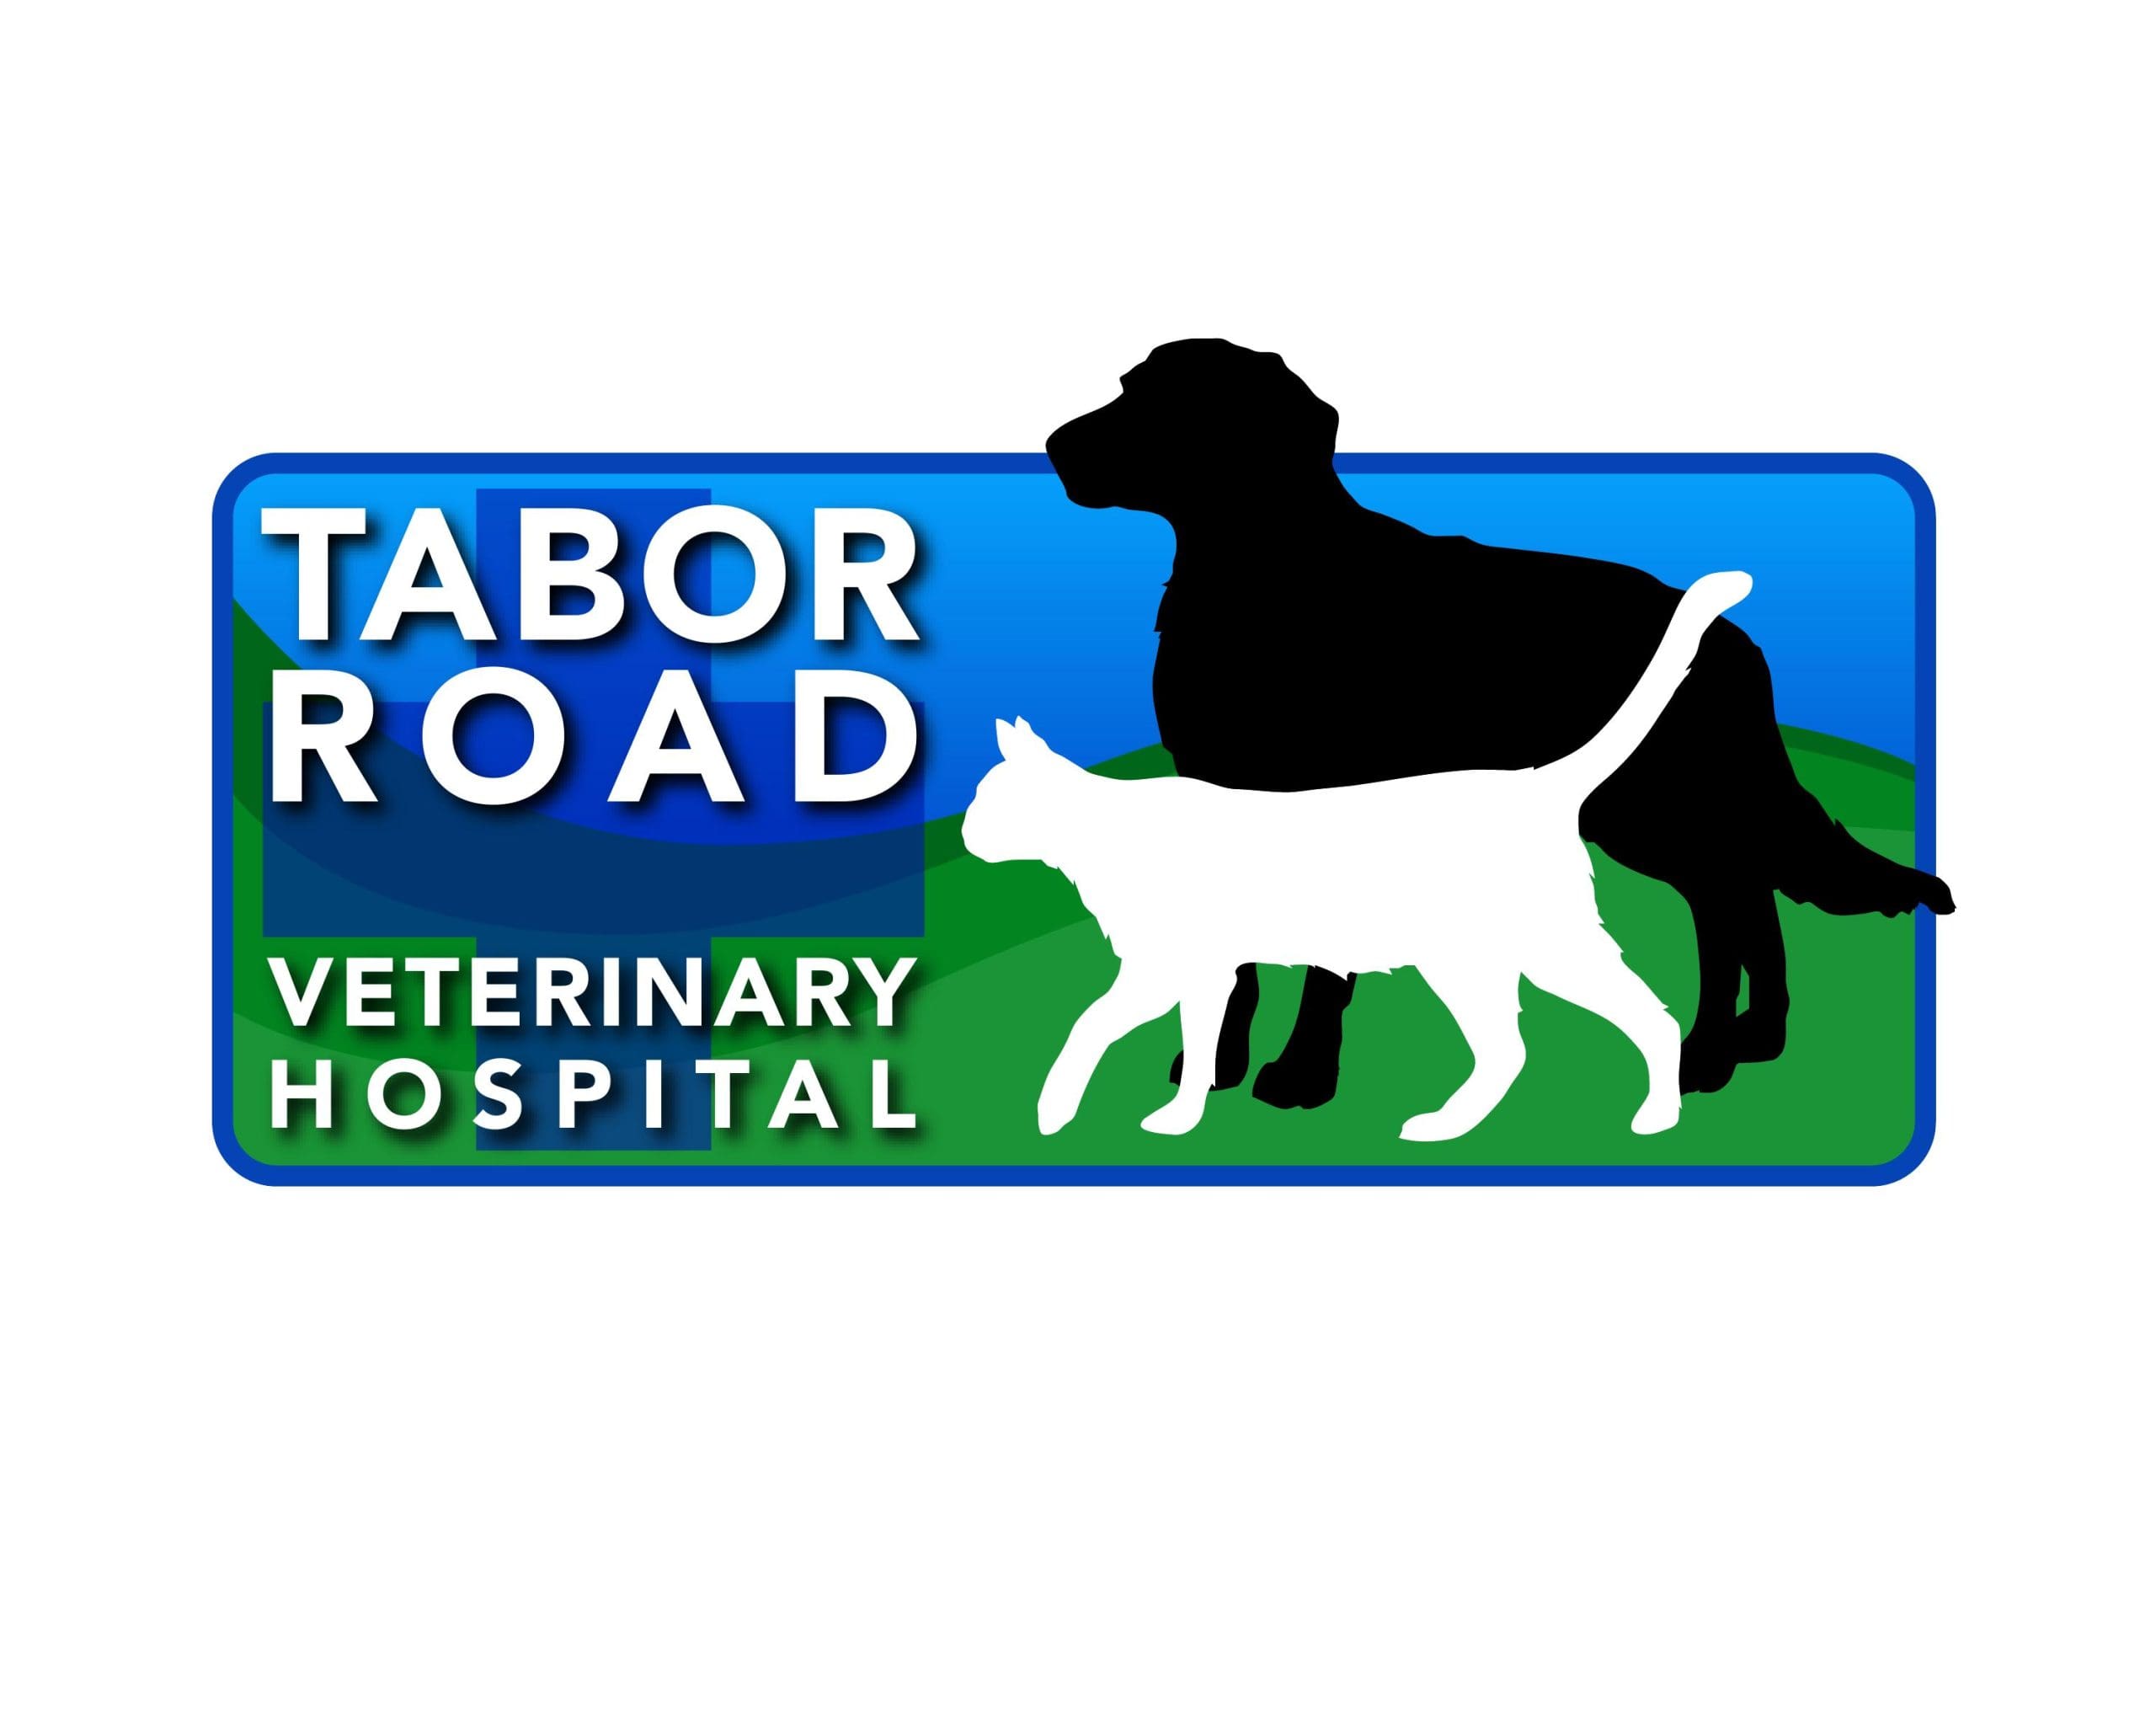 Tabor Road Veterinary Hospital